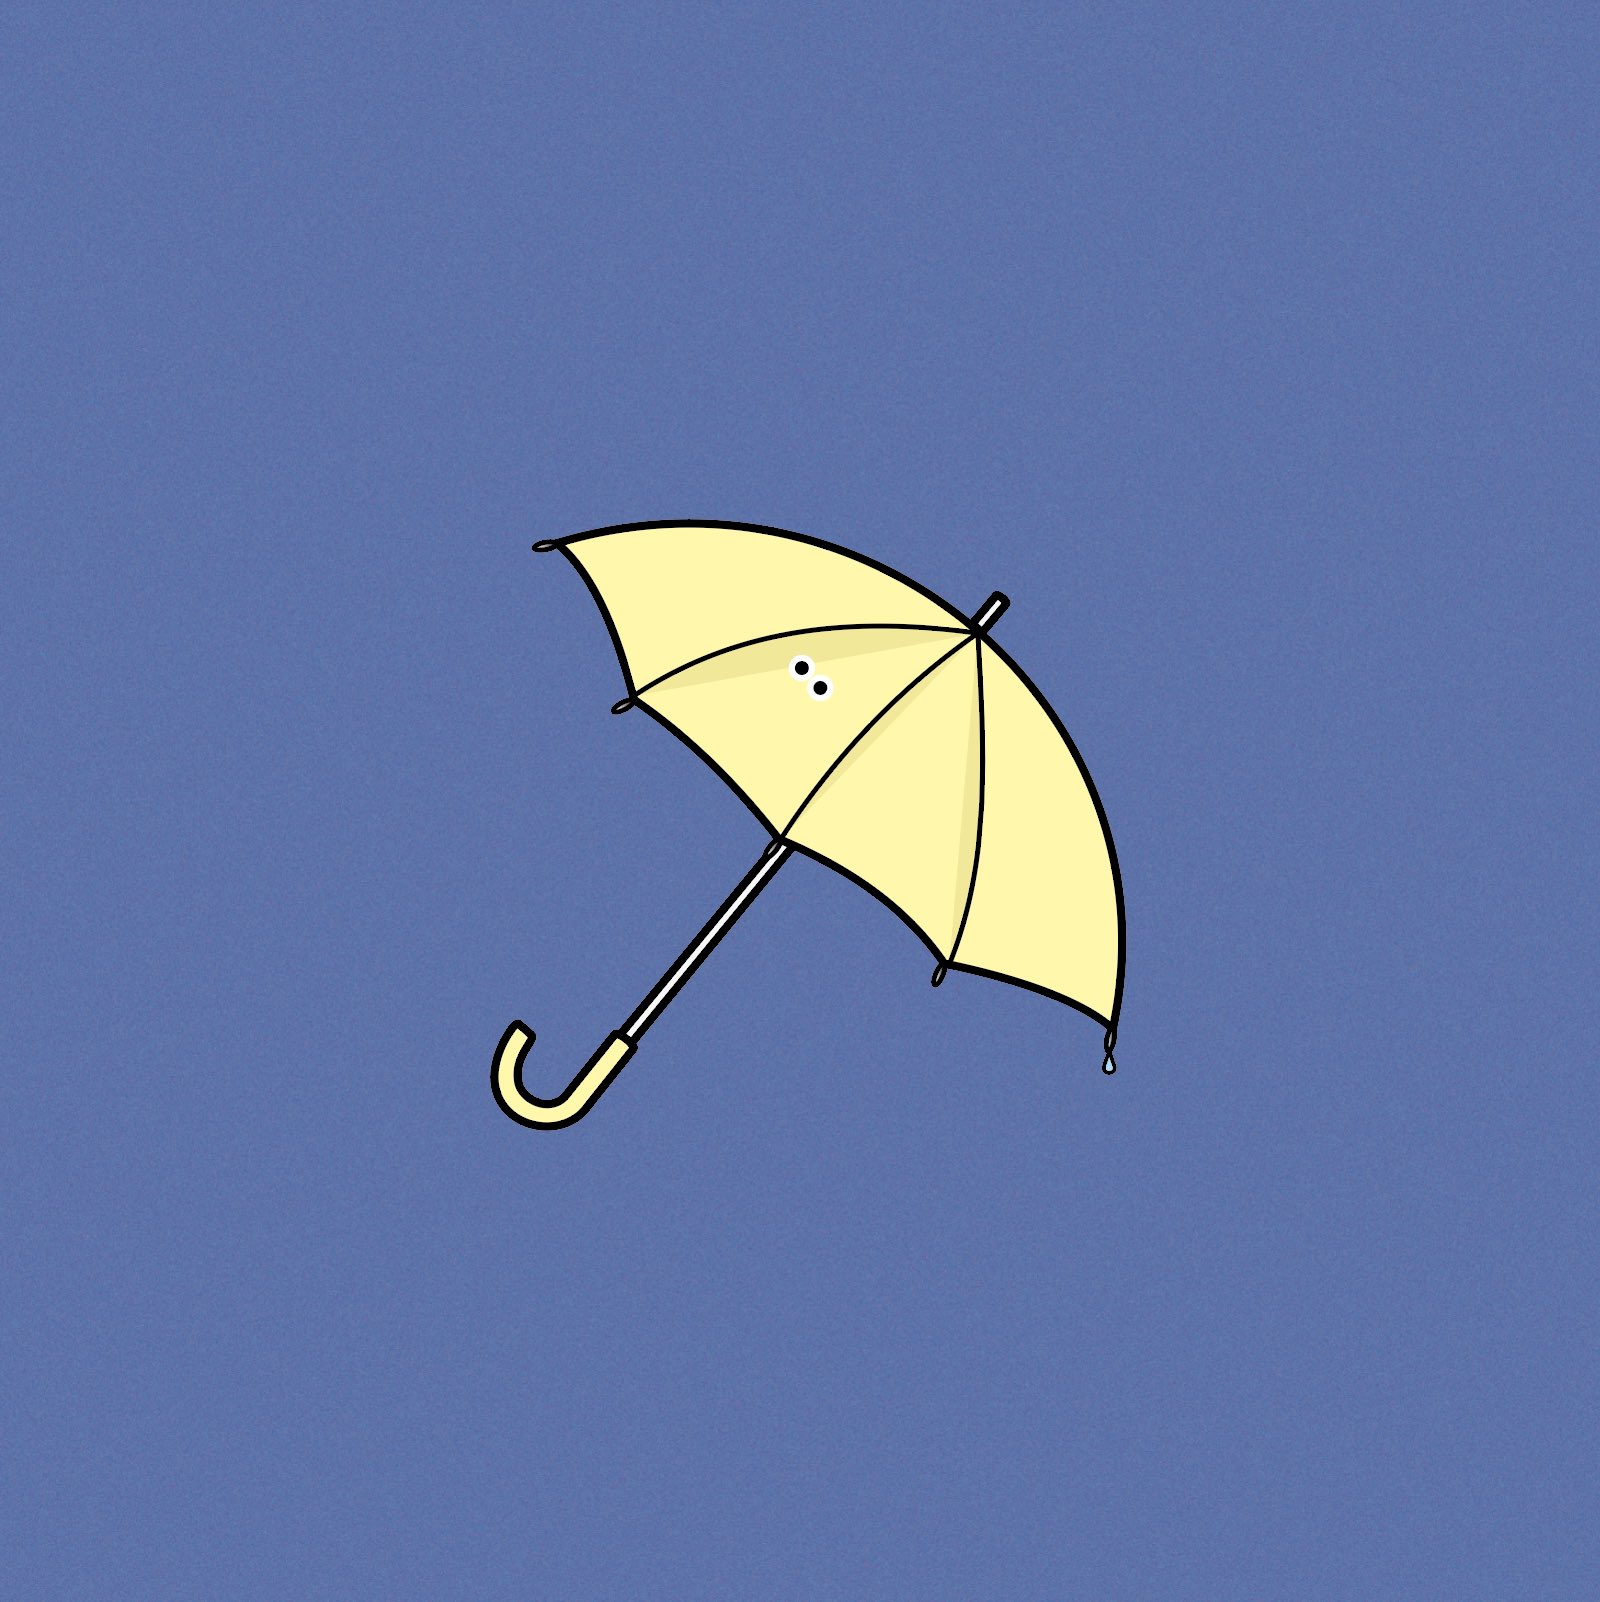 とかげ 傘 T Co Lyl5kj9oe6 Instagramもよろしくお願いします イラスト イラストレーター Illust Illustrator イラスト好きな人と繋がりたい アイコン フリーアイコン 傘 Umbrella T Co Hrbivuddbw Twitter